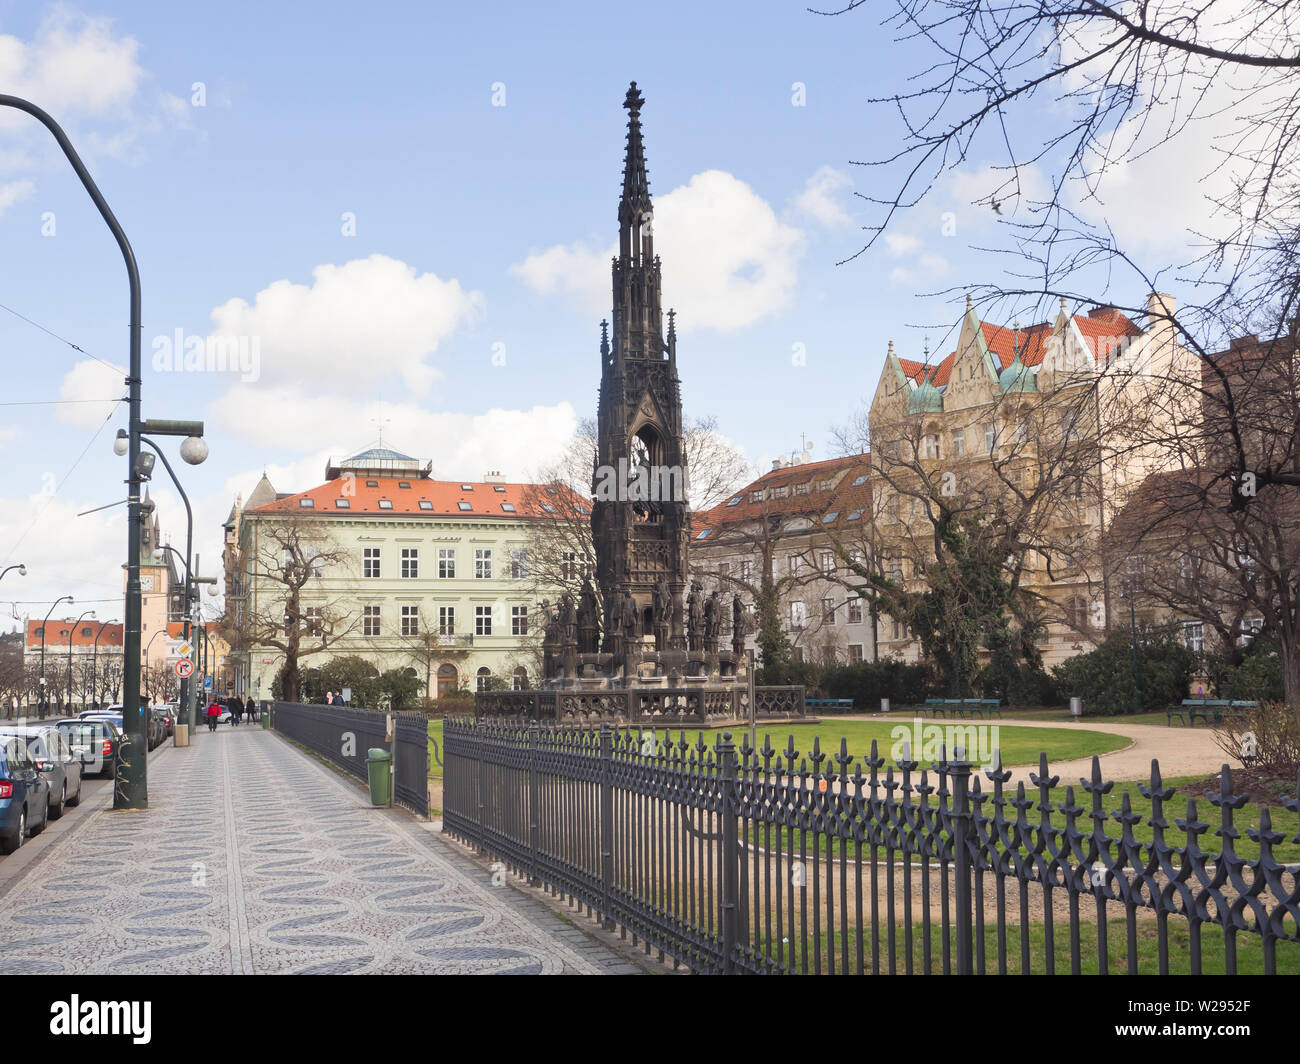 Kranner Trevi, Krannerova kašna, un monumento de estilo neo-gótico con esculturas alegóricas en Stare Mesto en el centro de Praga, República Checa Foto de stock